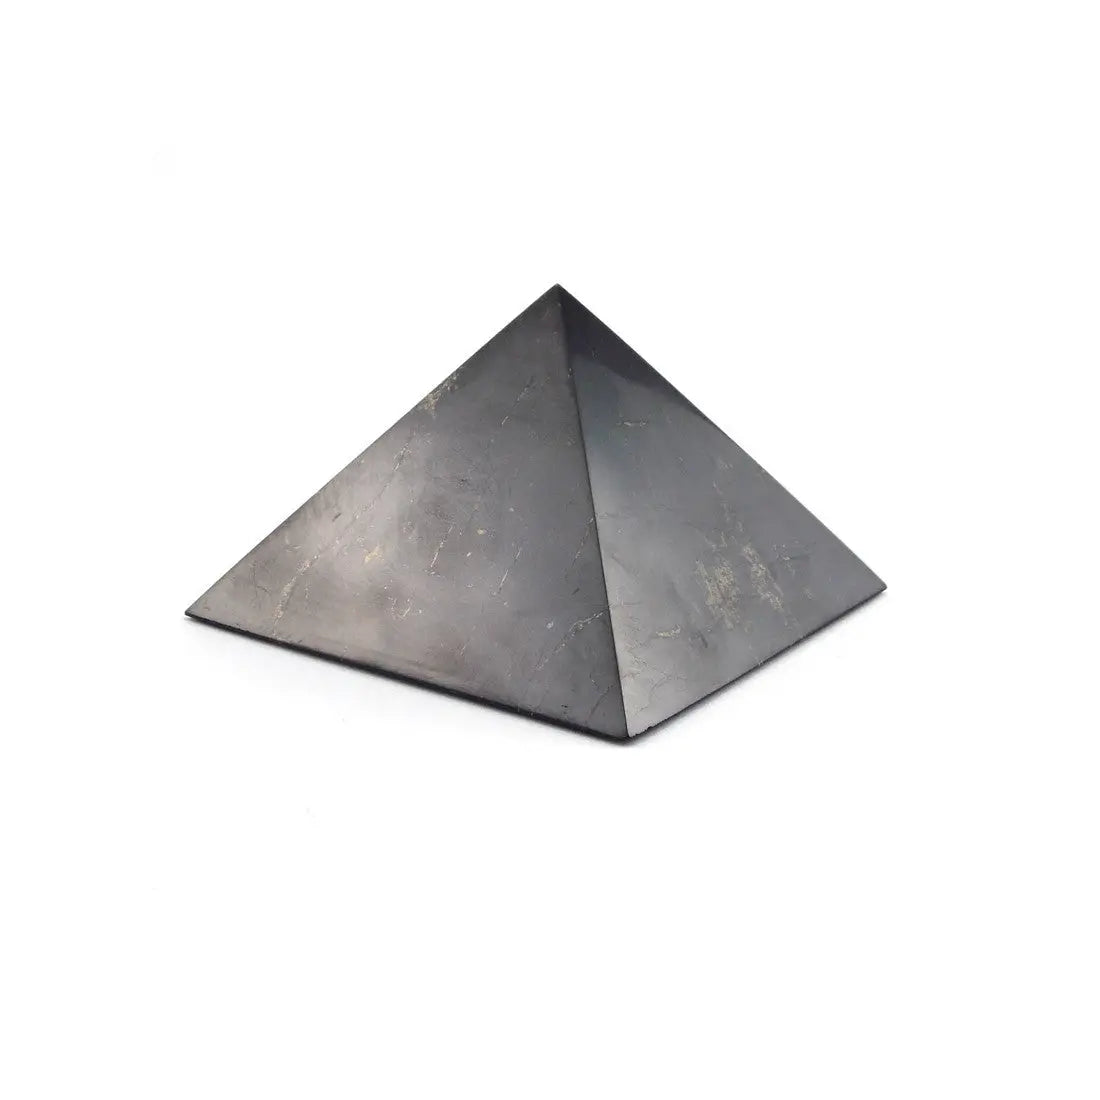 Shungite pyramid 3cm - Spellbound